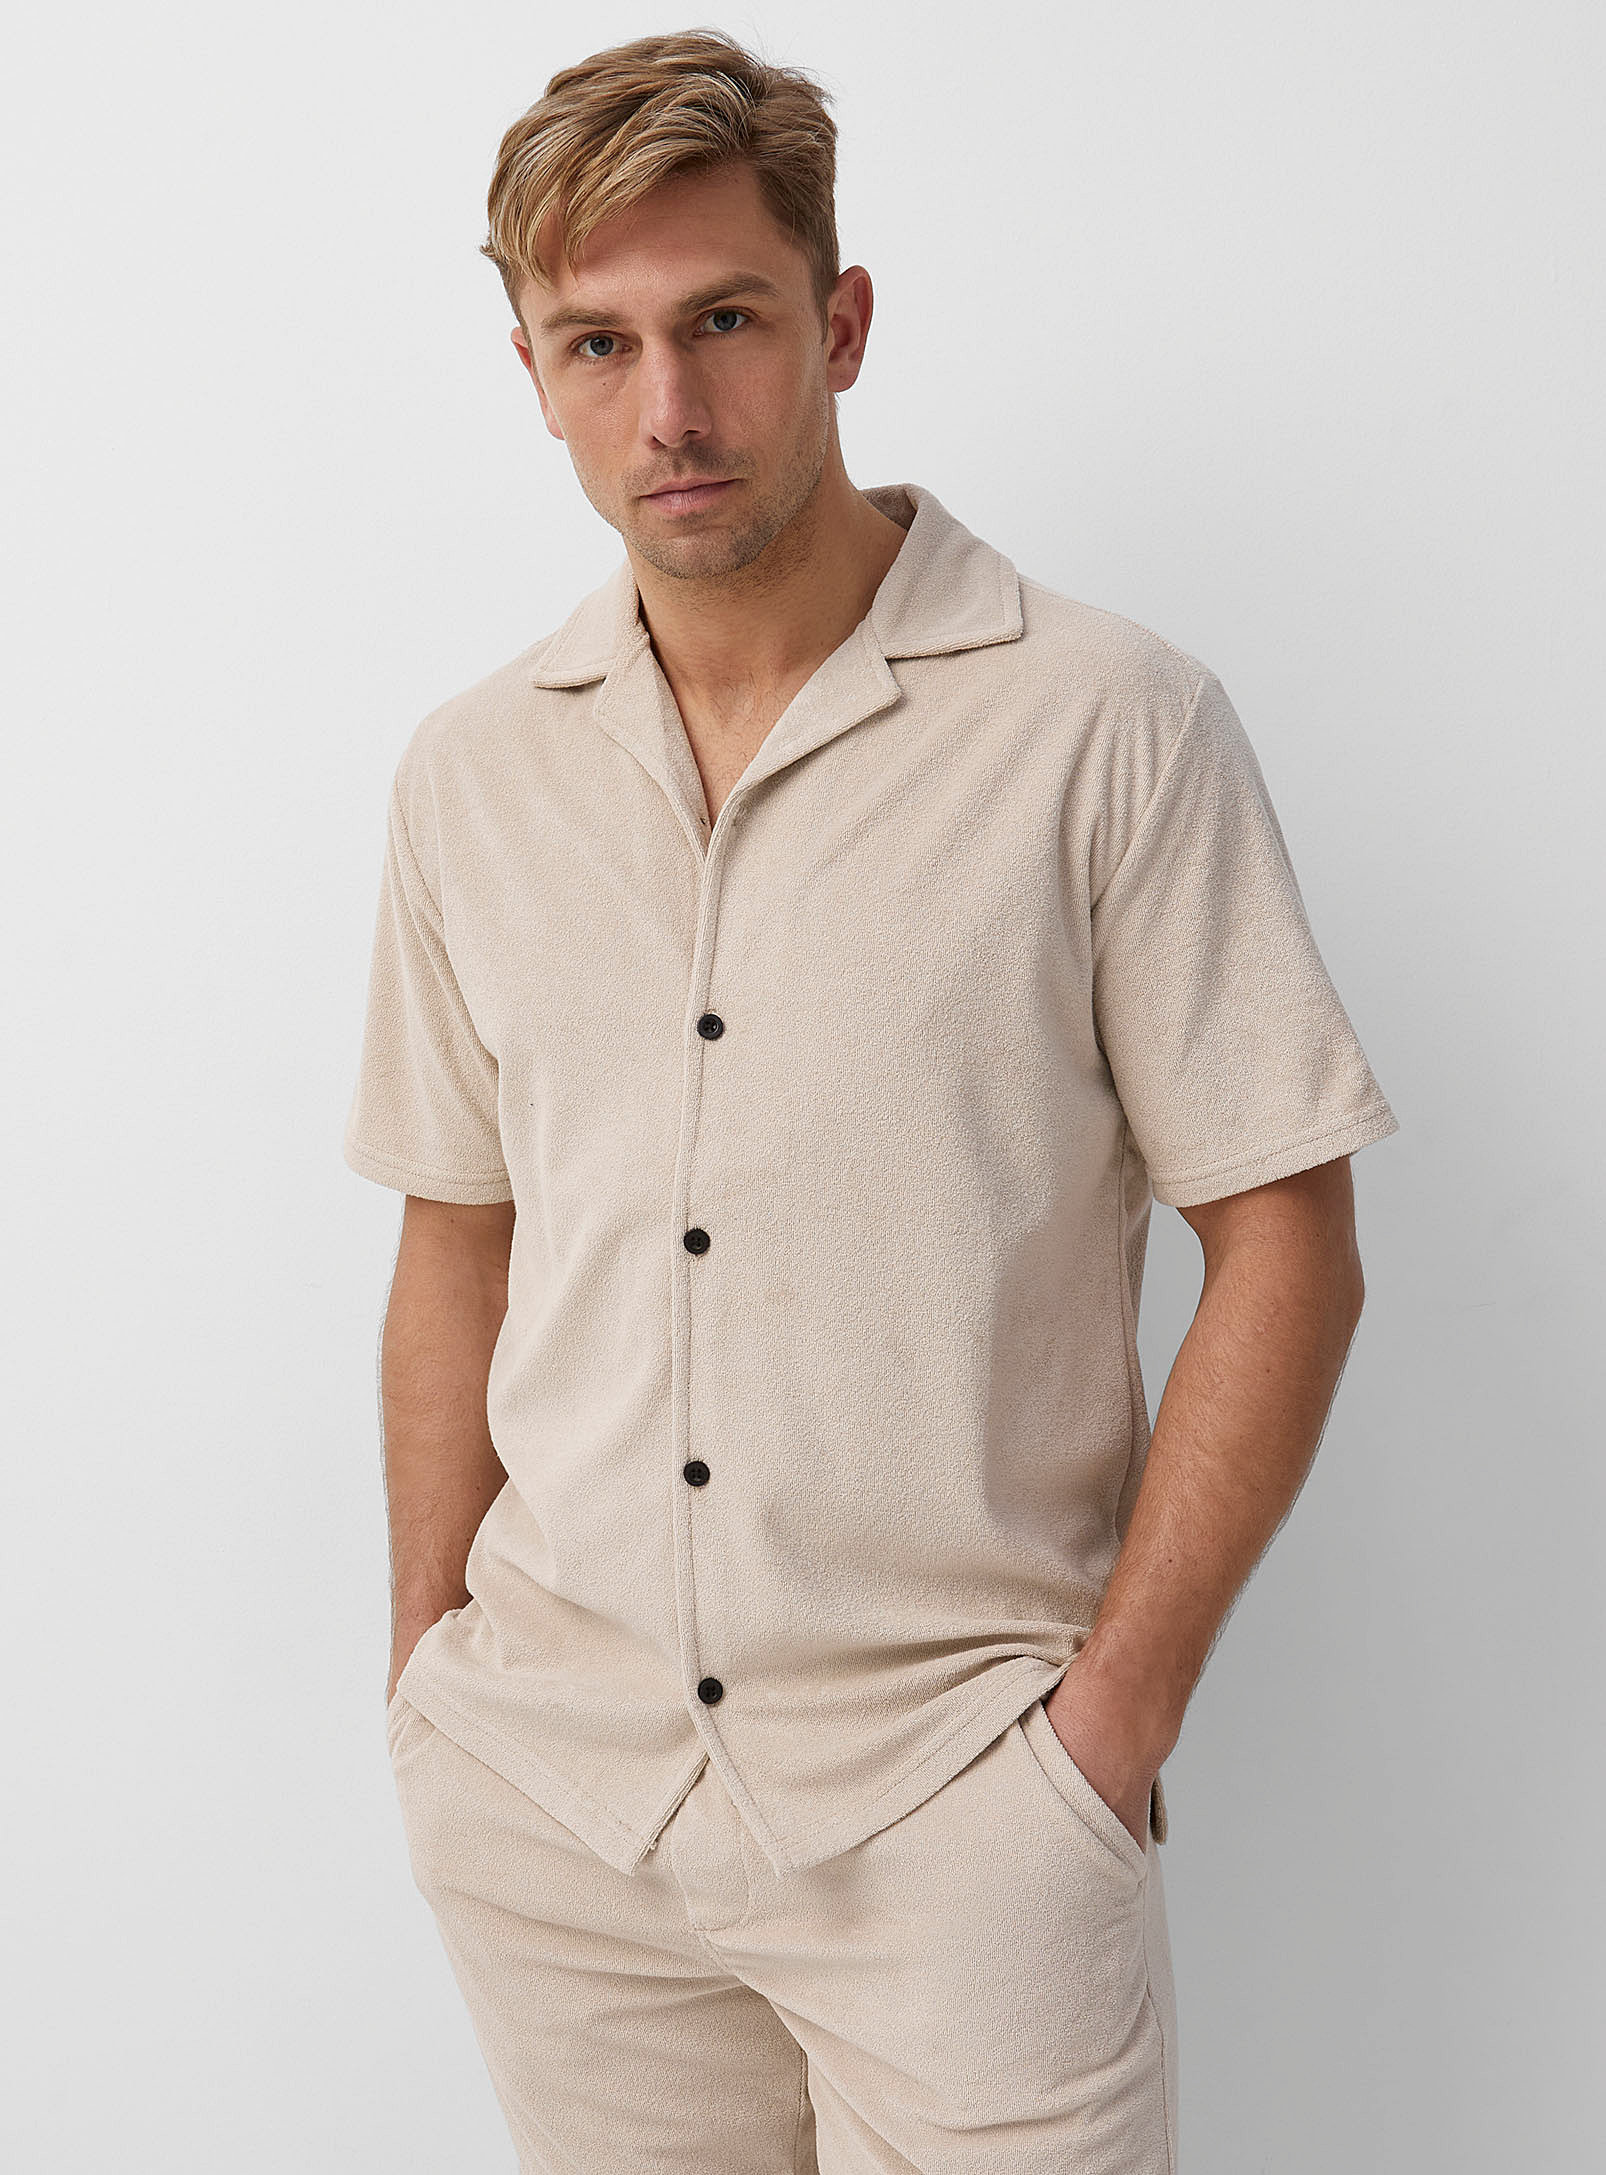 Lindbergh - Men's Open-collar terry shirt